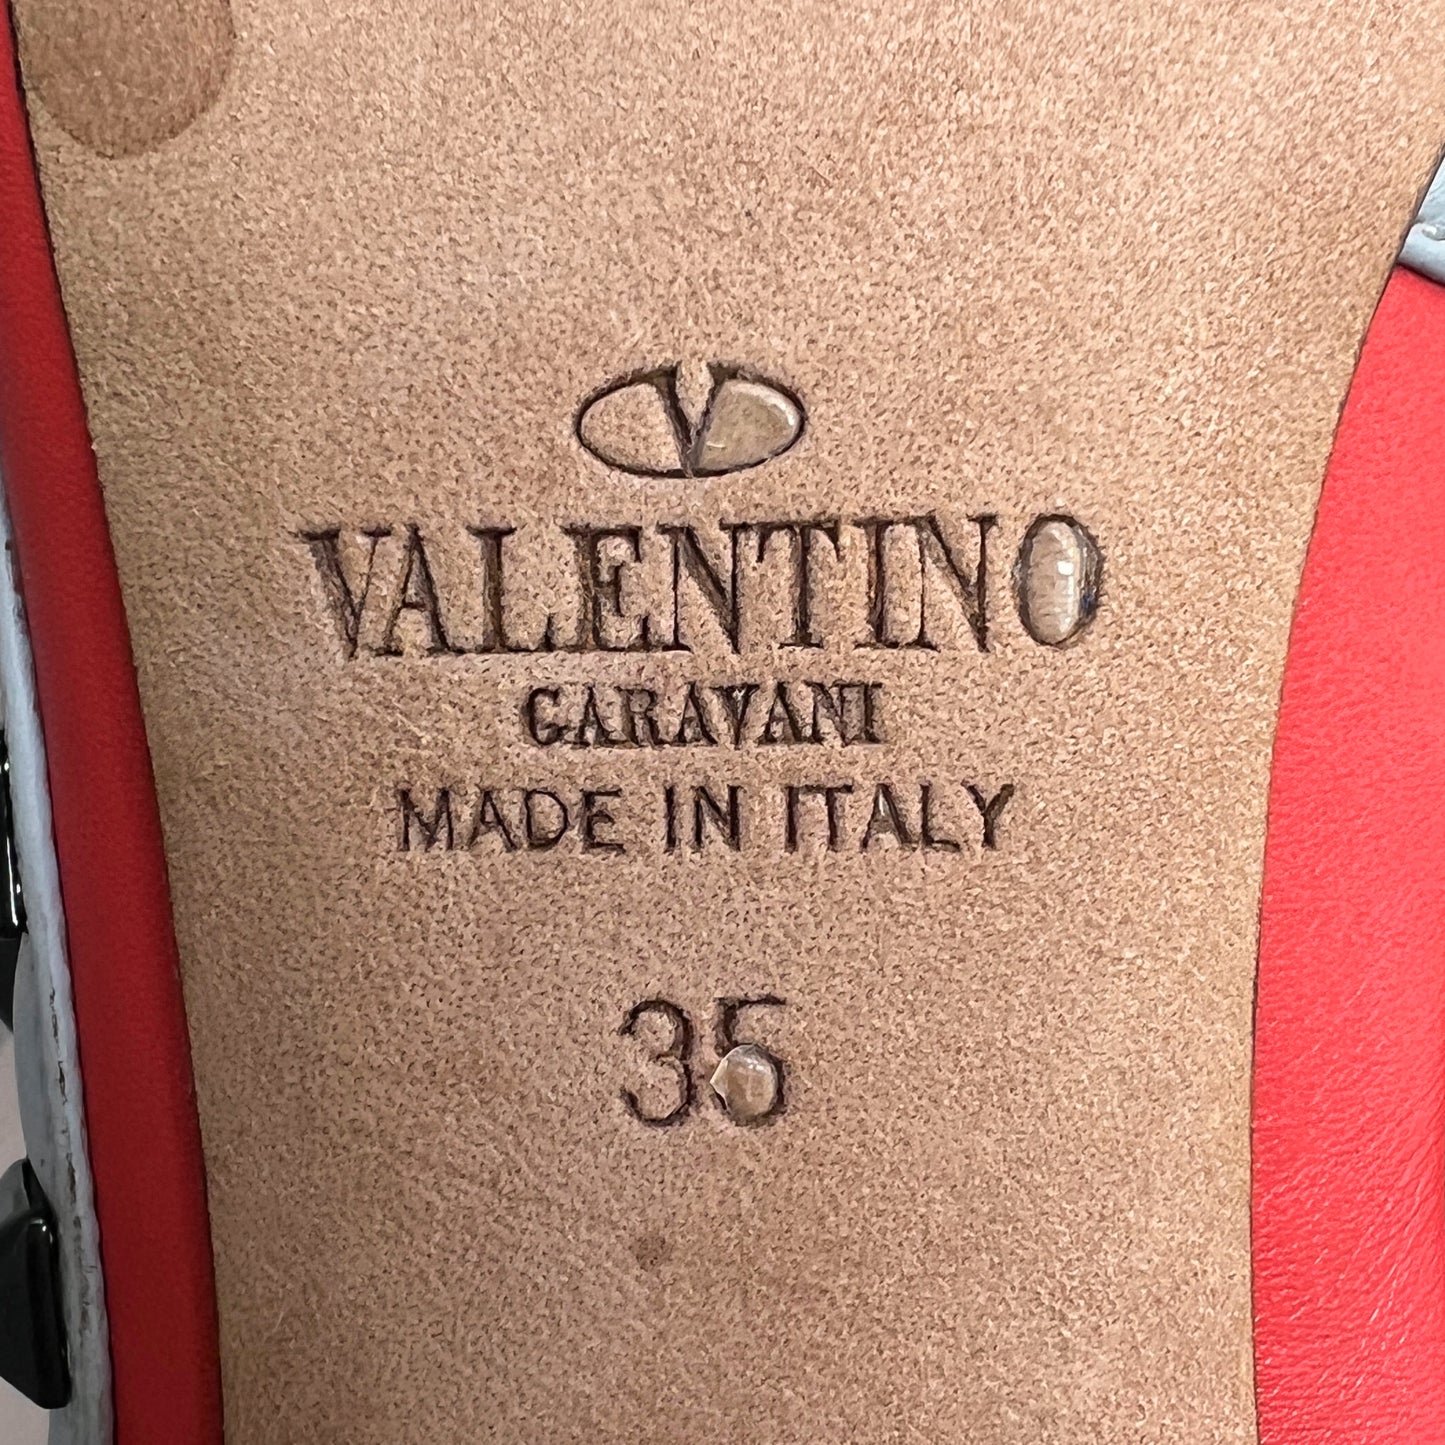 Valentino Garavani Rockstud Multicolor Leather Multi-Strap Studded Heels Pumps